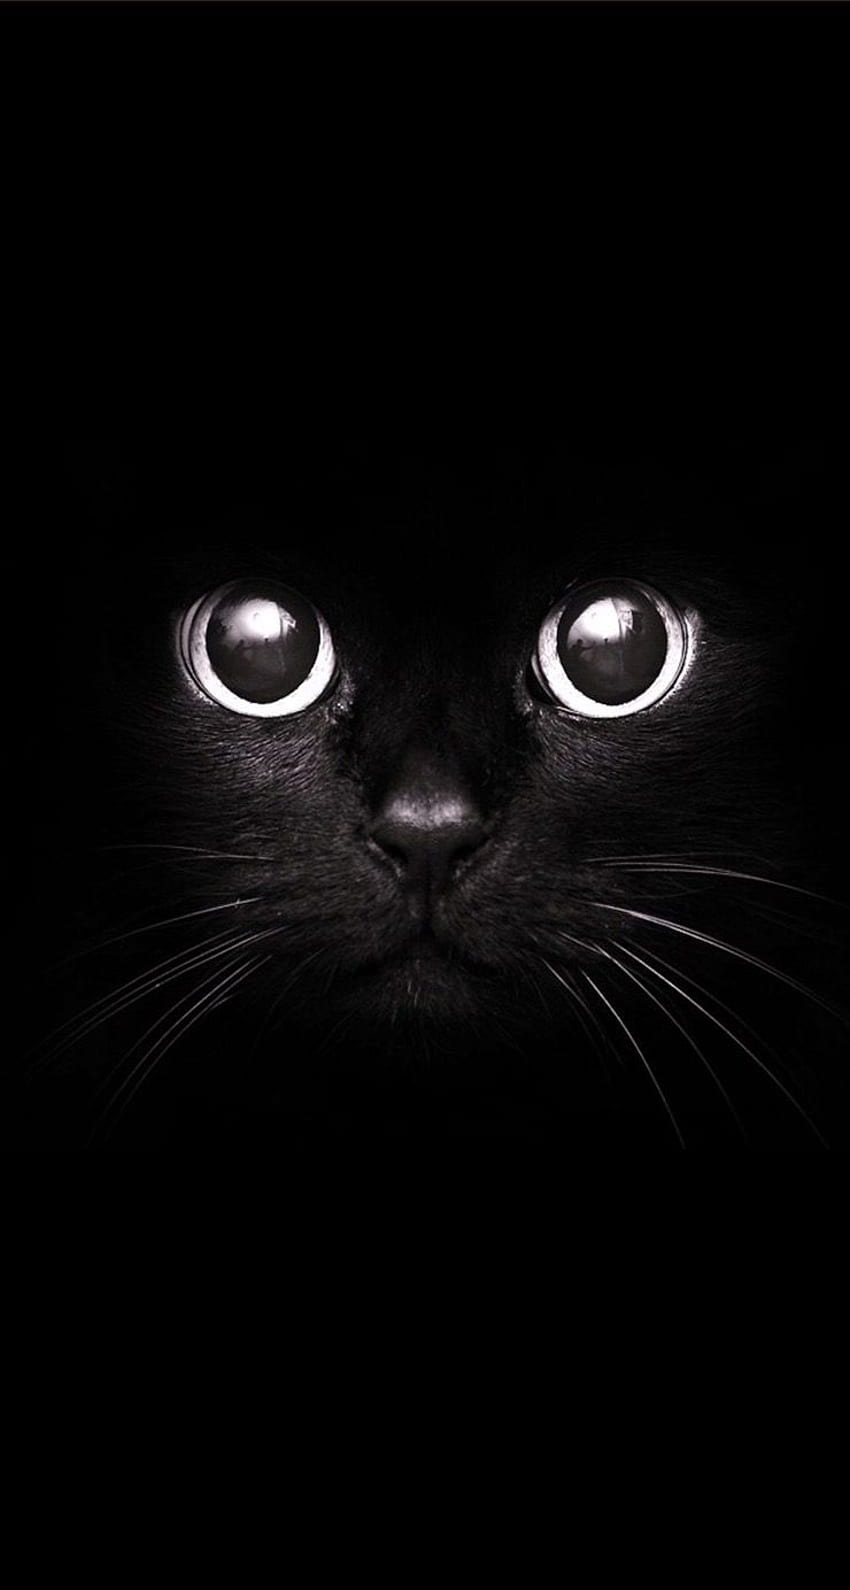 Mèo đen dễ thương: Bạn có yêu mèo không? Hãy nhìn thấy hình ảnh của mèo đen dễ thương, với đường nét tinh tế và sự đáng yêu tự nhiên sẽ đem lại cho bạn cảm giác thư giãn. Đó là một món quà tuyệt vời cho những ai yêu thích động vật.